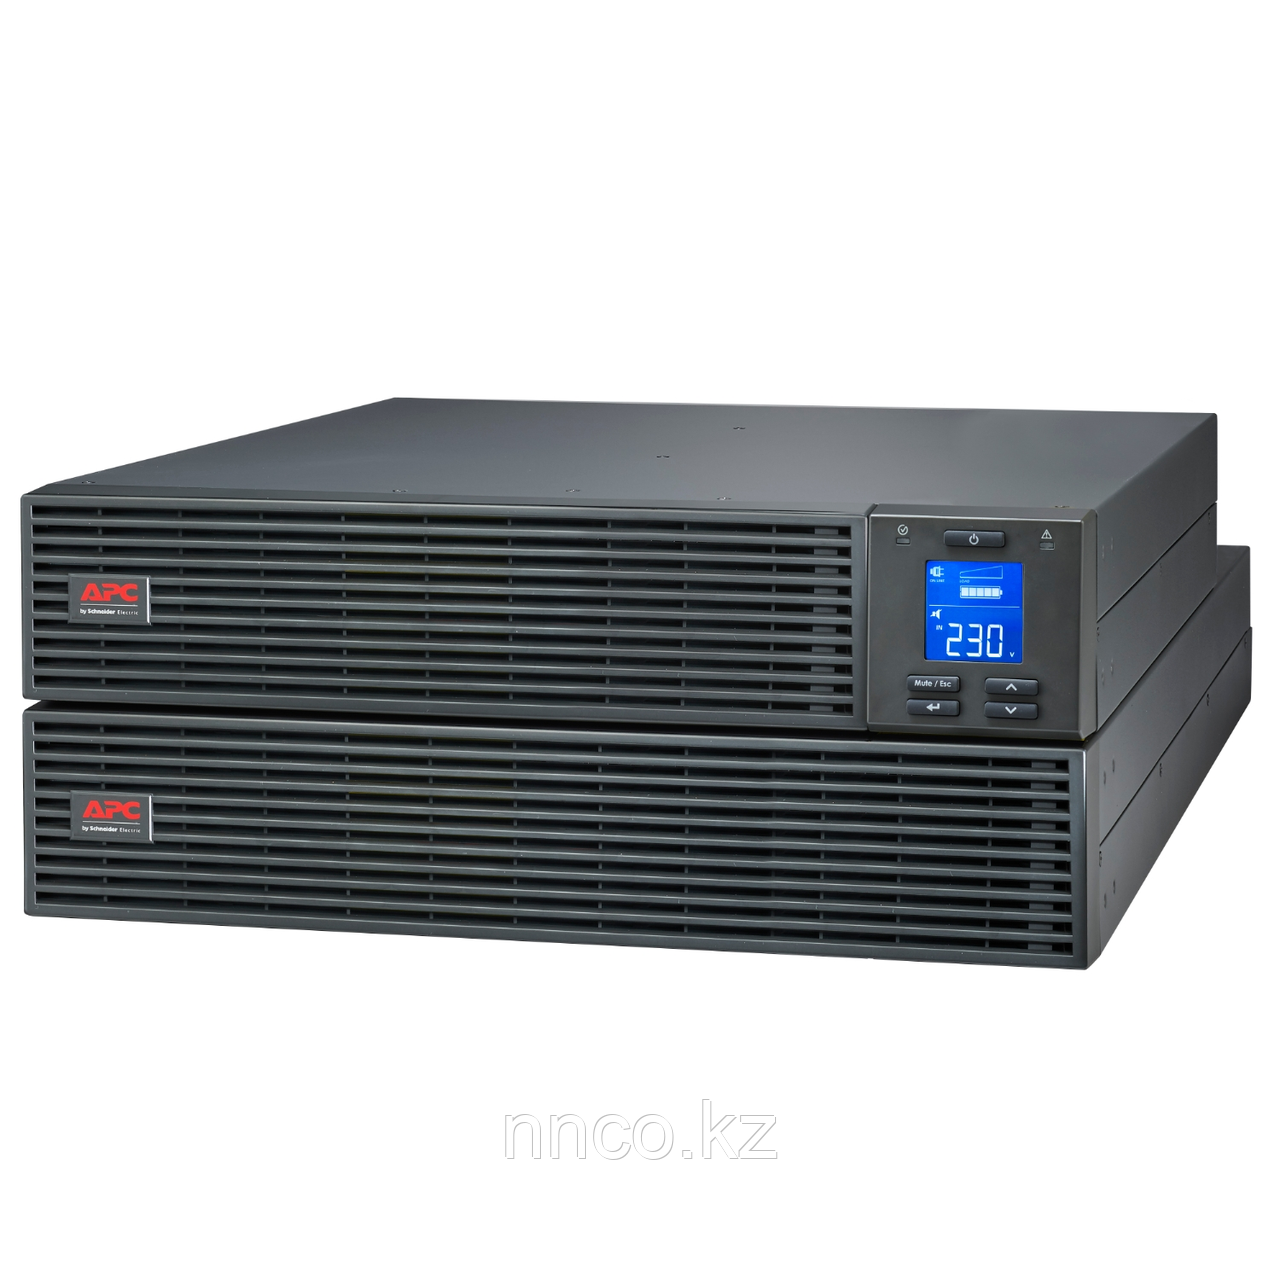 Источник бесперебойного питания APC Easy UPS On-Line 2000VA/1600W Rackmount 4U 230V